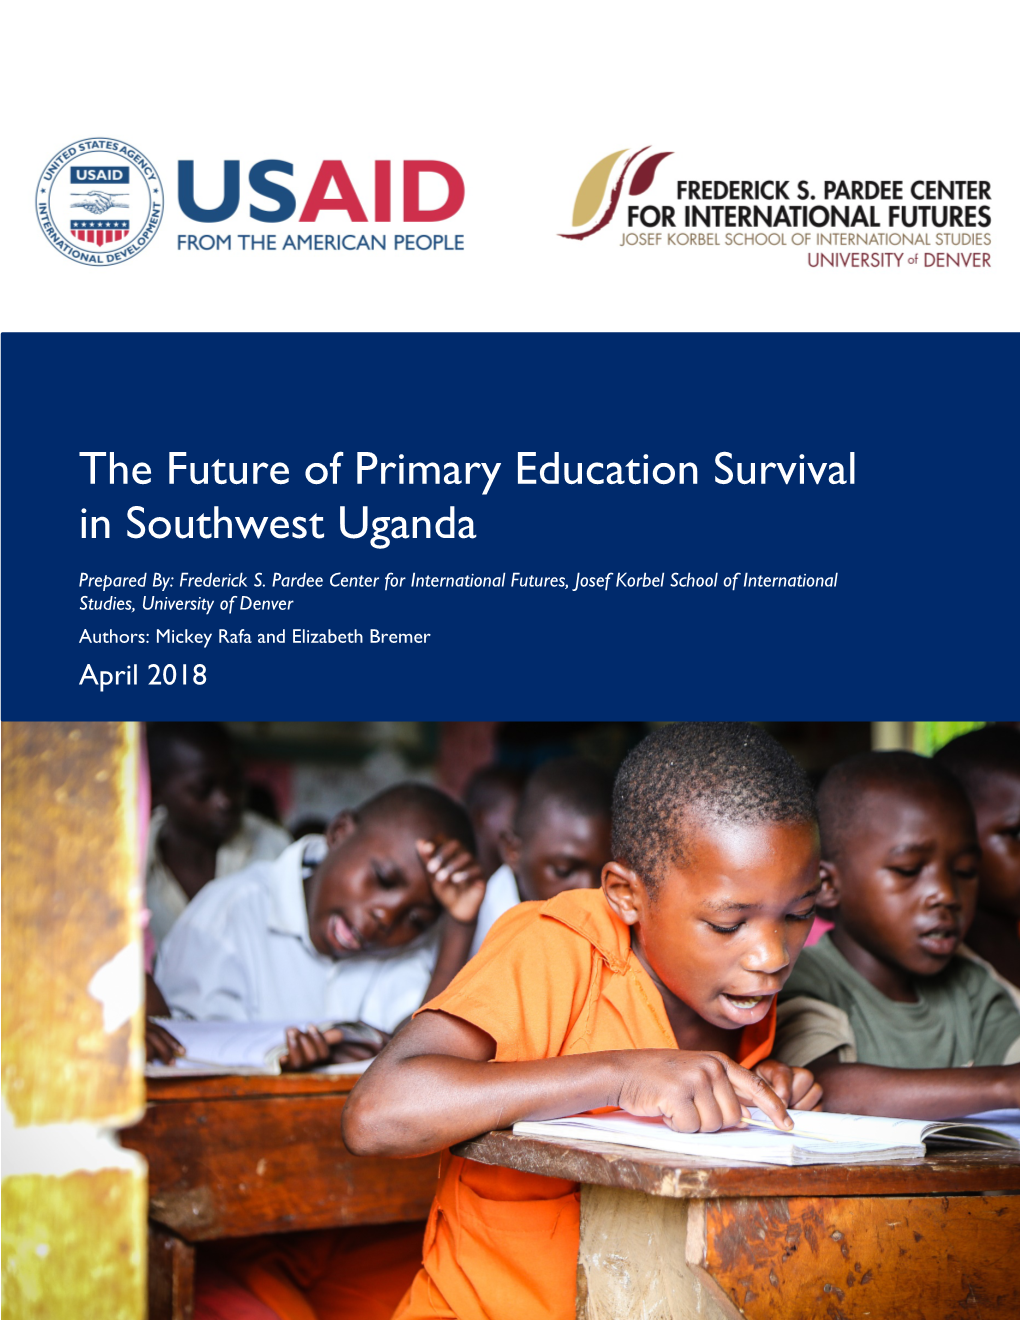 Analysis of Primary Education in Southwest Uganda